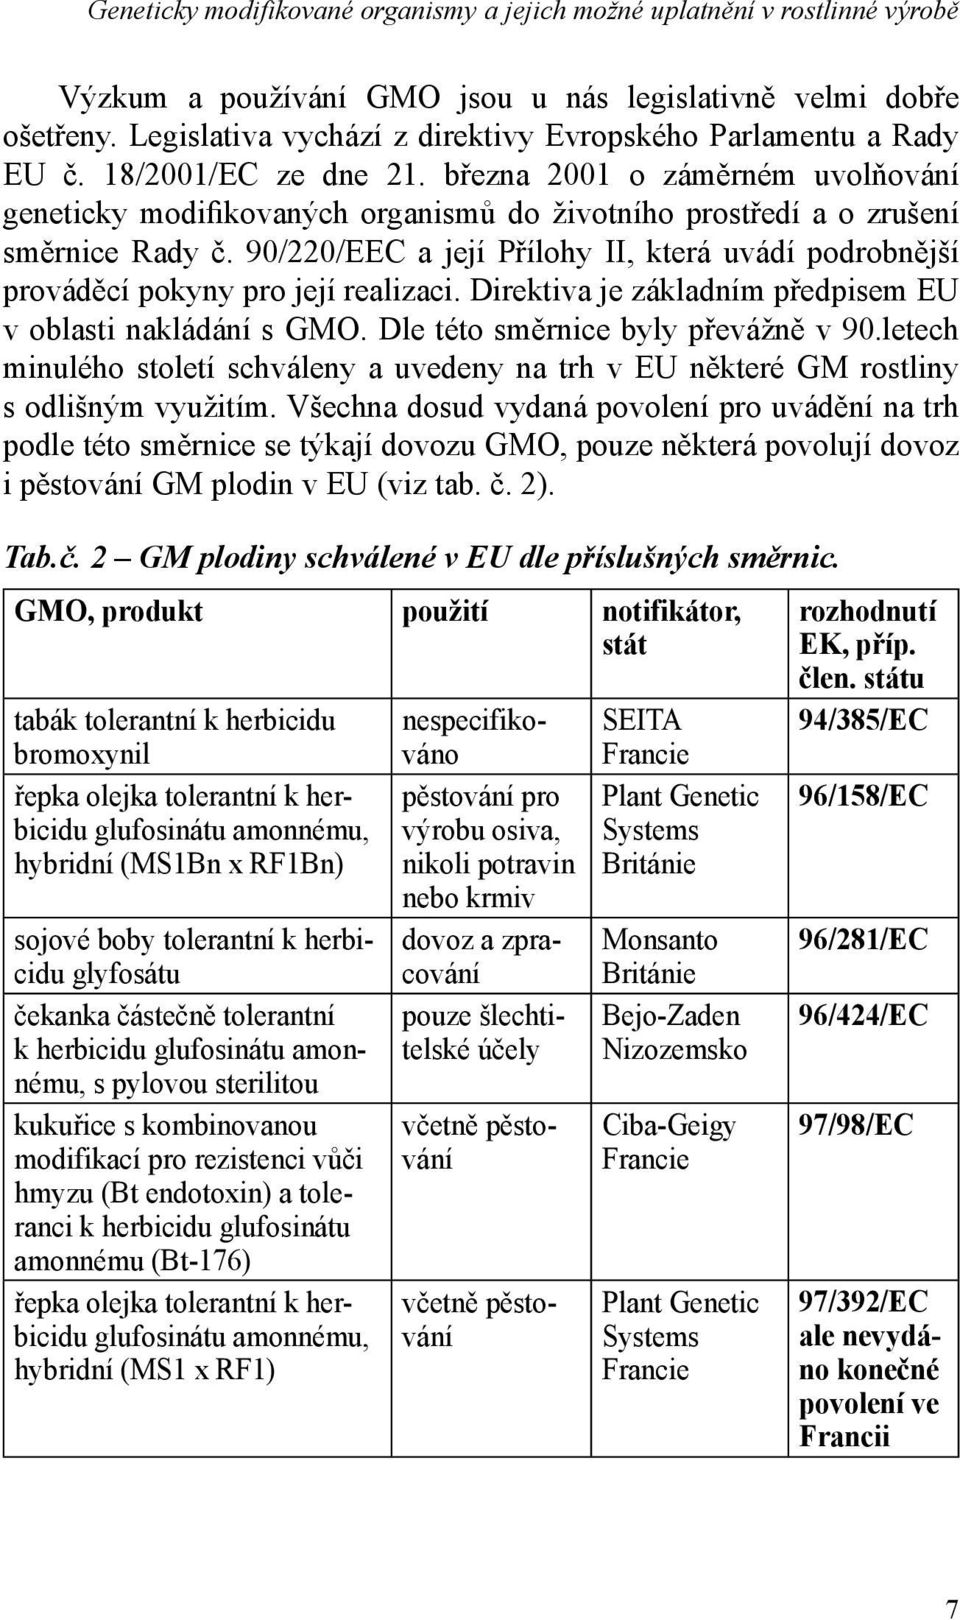 března 2001 o záměrném uvolňování geneticky modifikovaných organismů do životního prostředí a o zrušení směrnice Rady č.